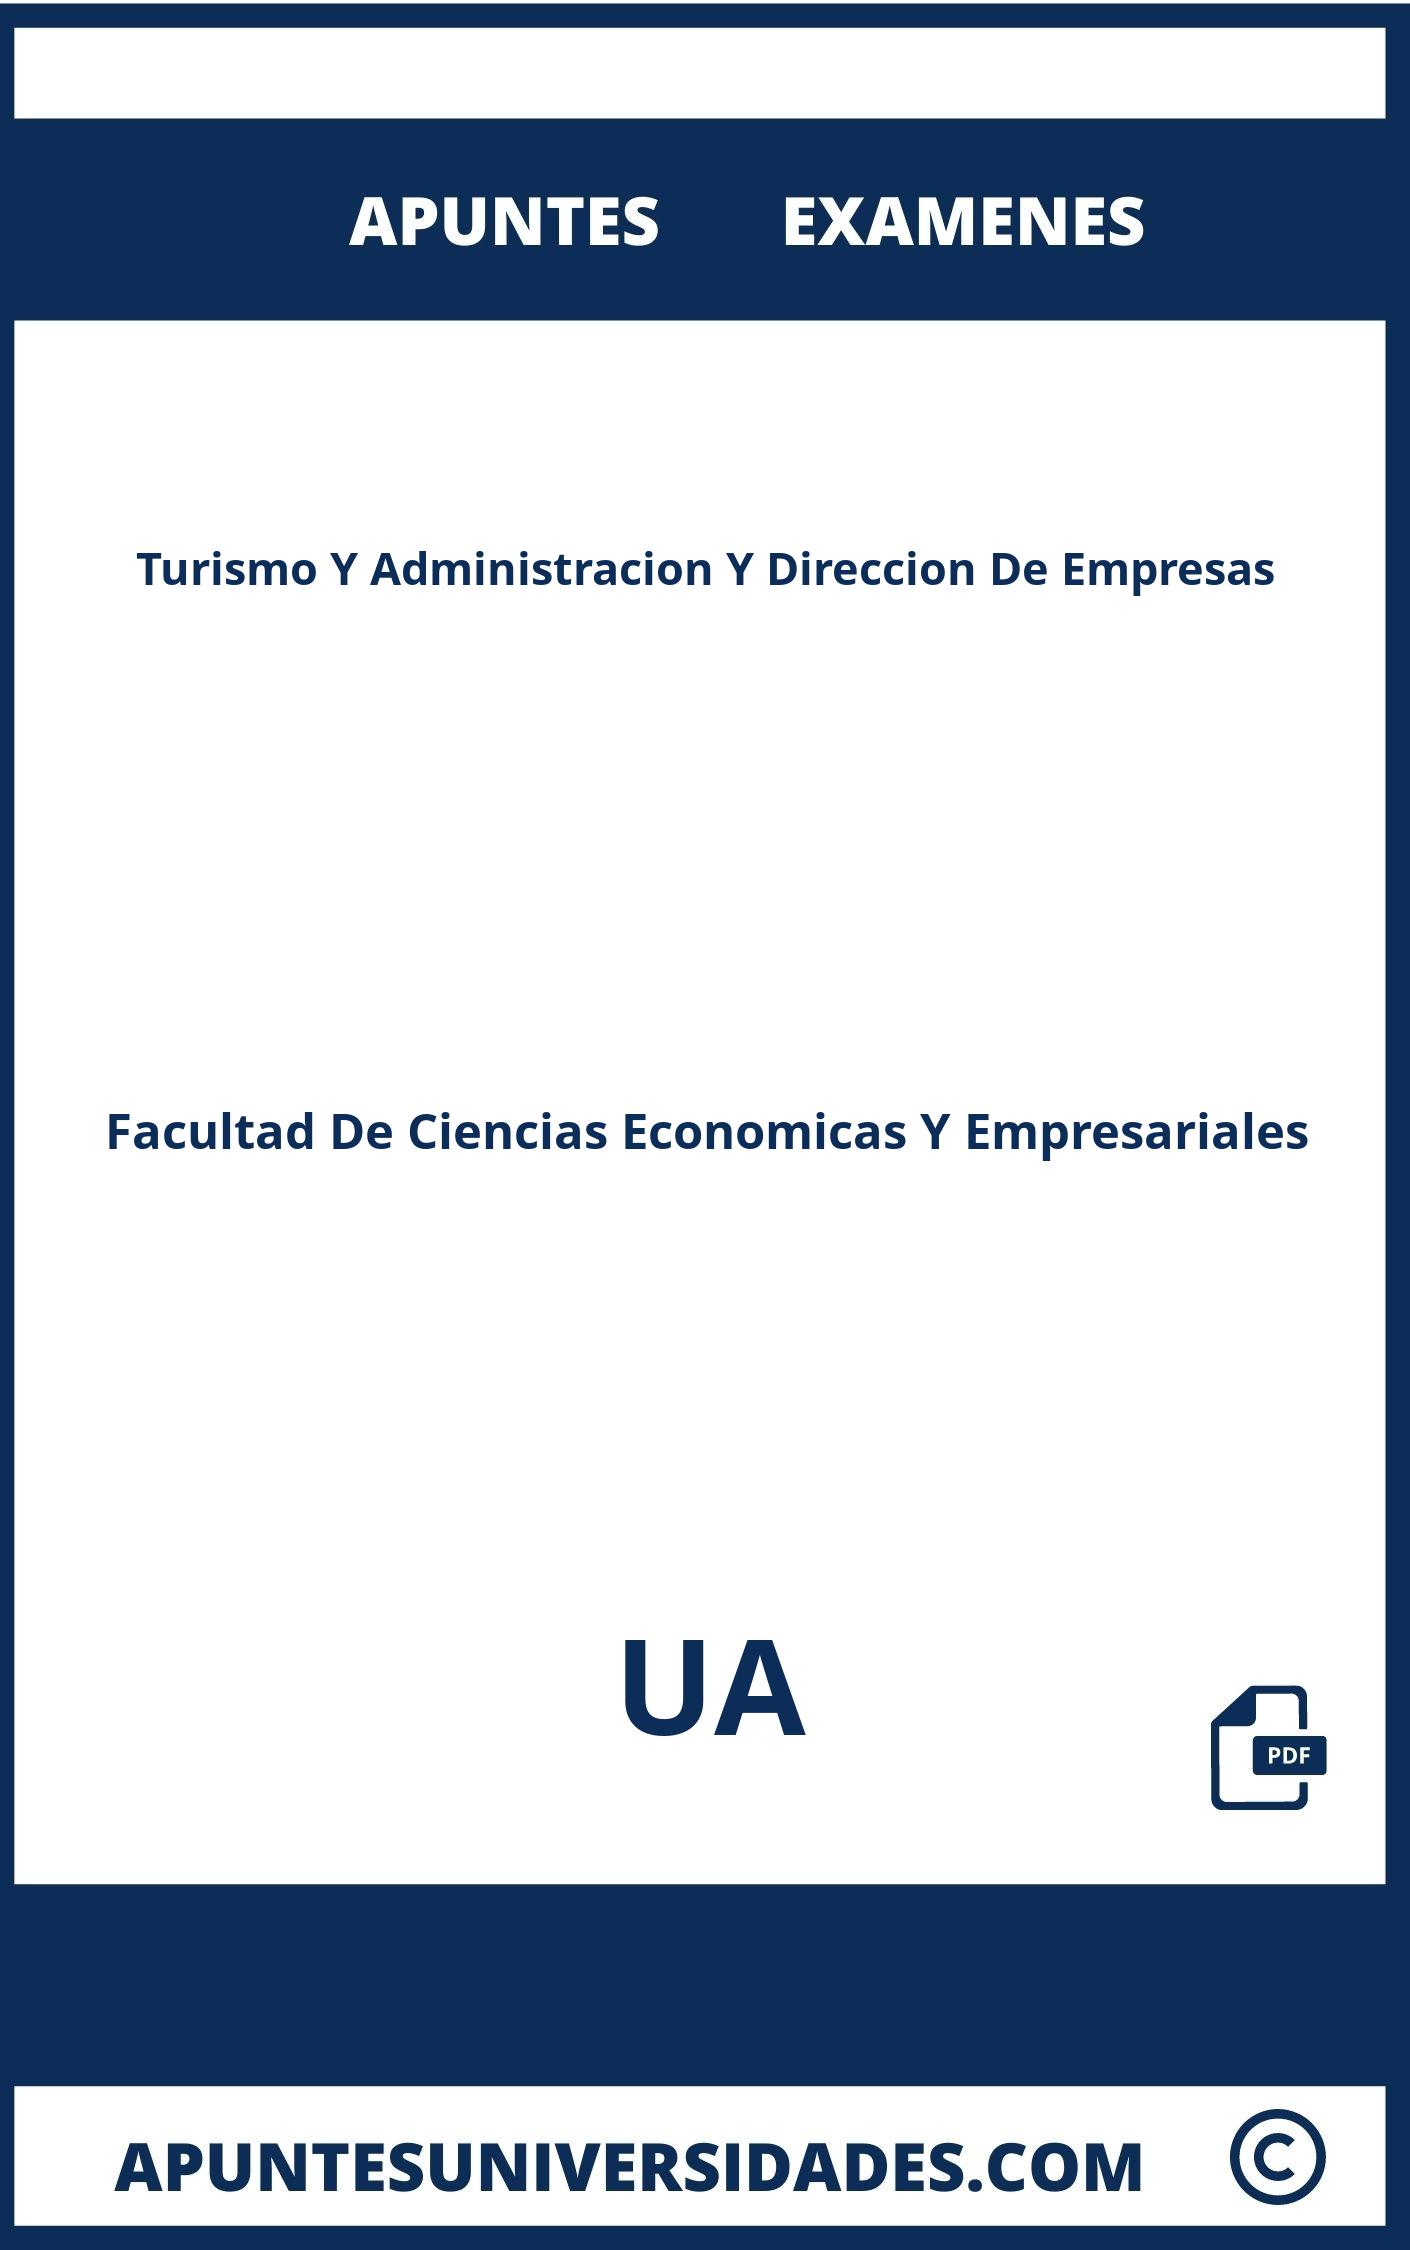 Apuntes y Examenes Turismo Y Administracion Y Direccion De Empresas UA